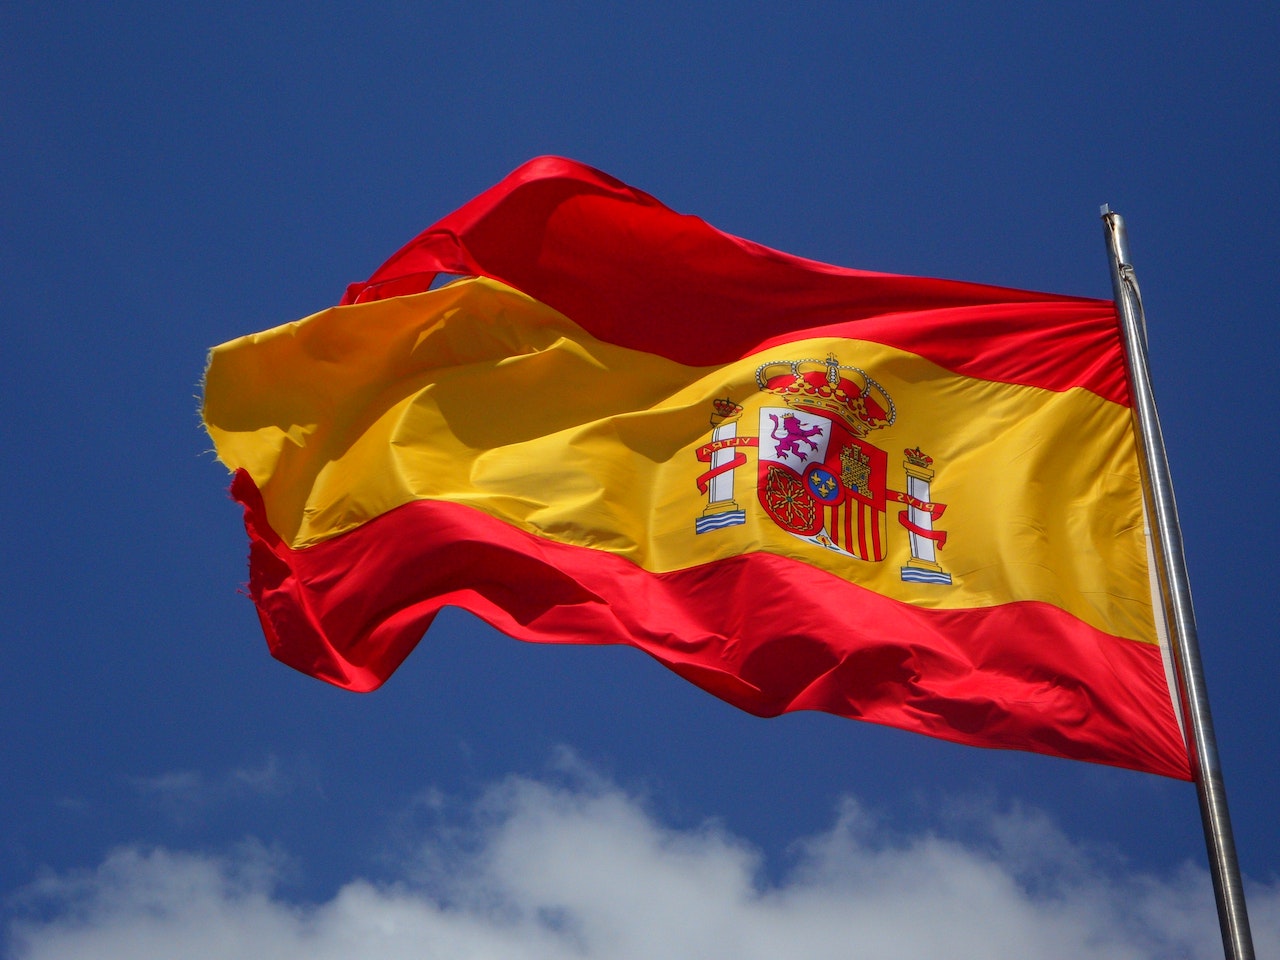 A flag of Spain waving through the air